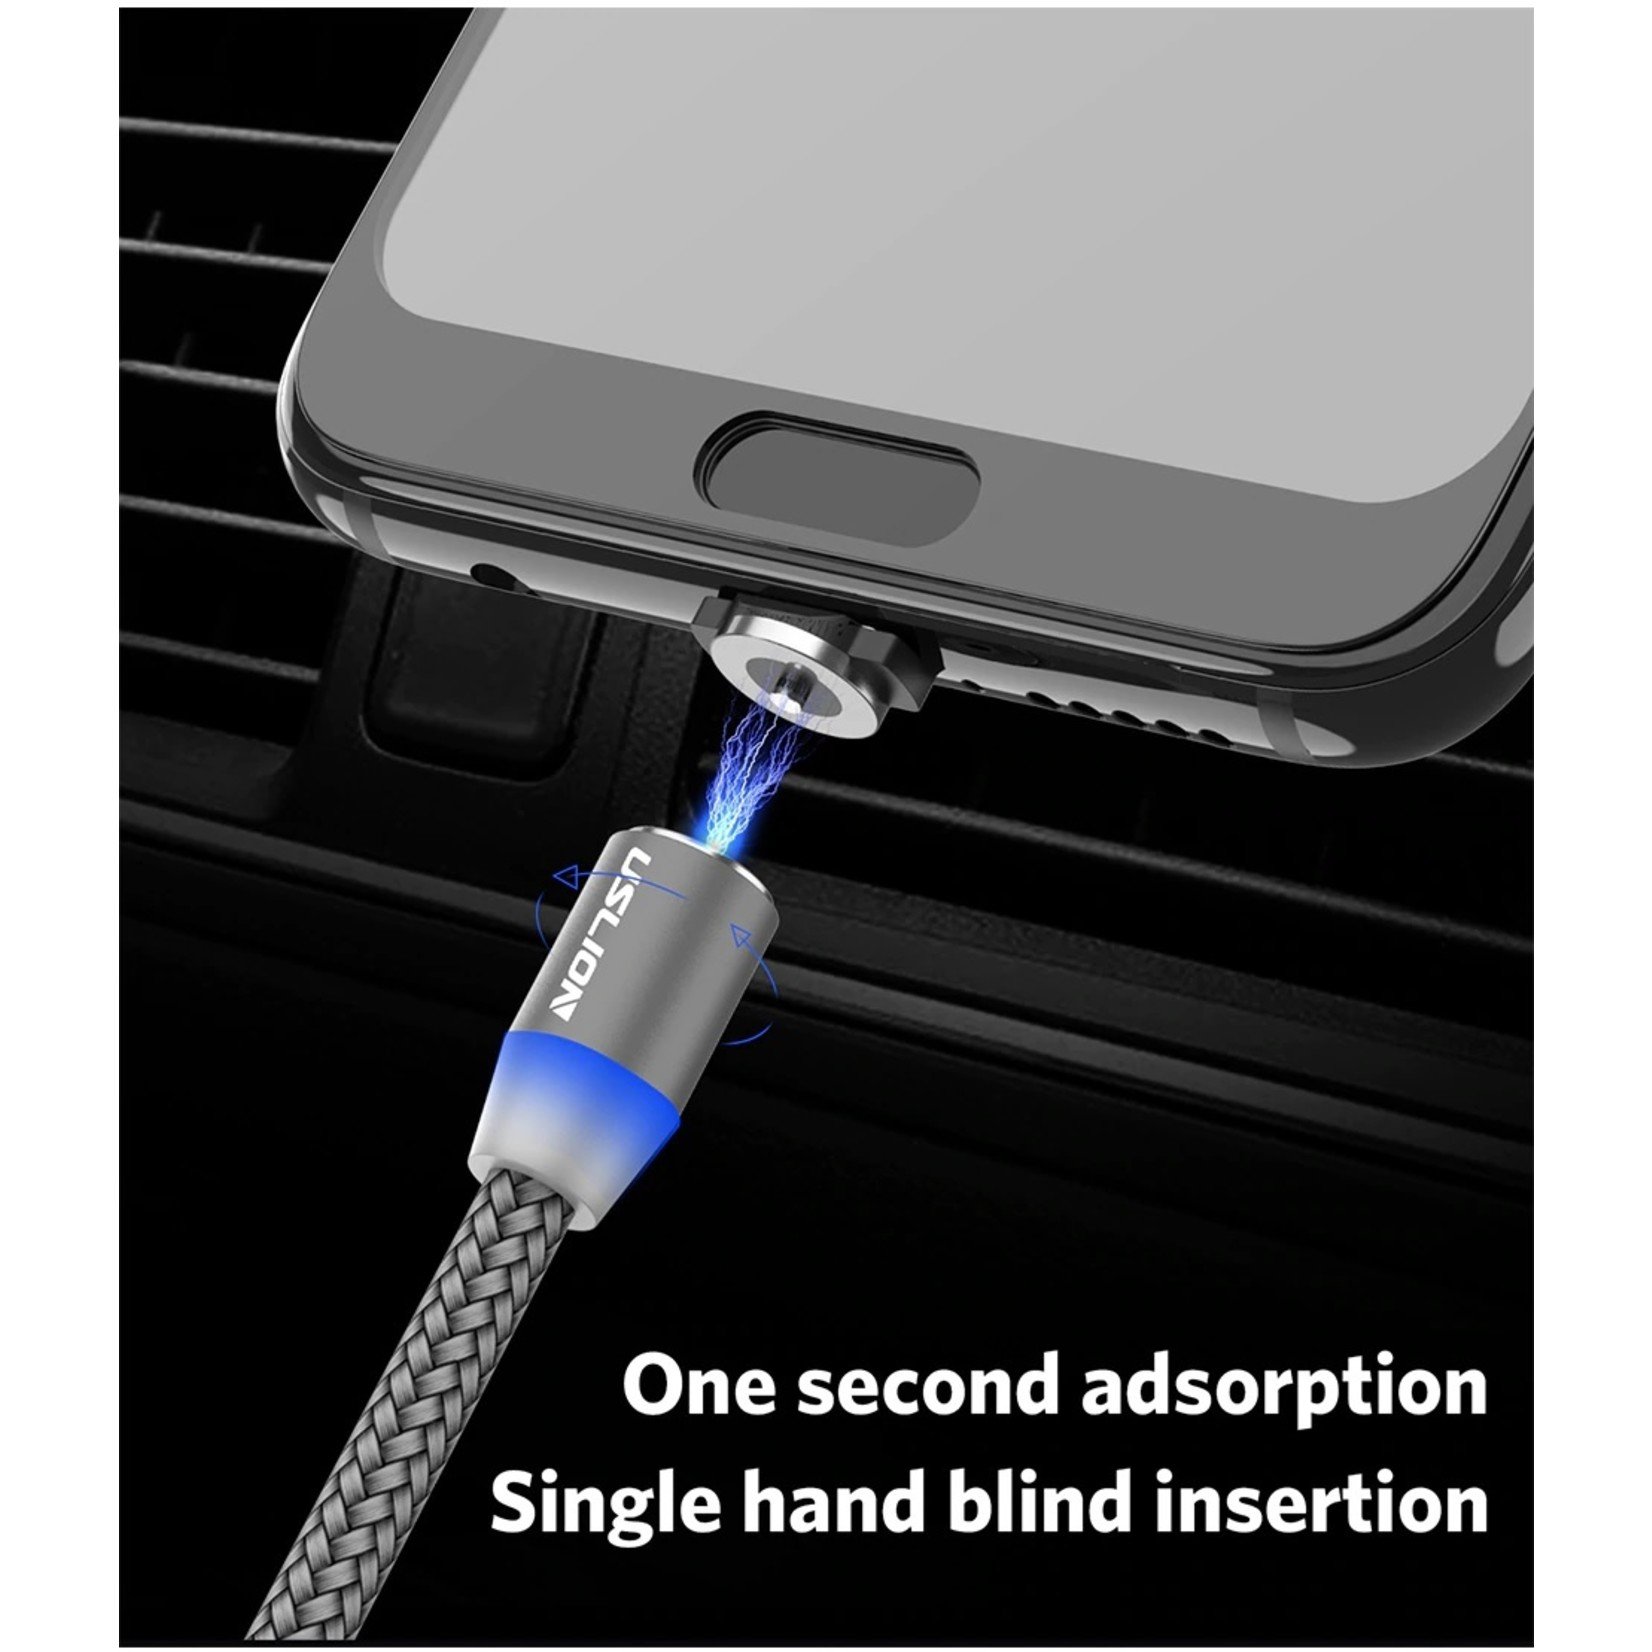 Magnetische Oplaadkabel - Magneet met Micro-USB adapter - 360 graden – Laadkabel draaibaar